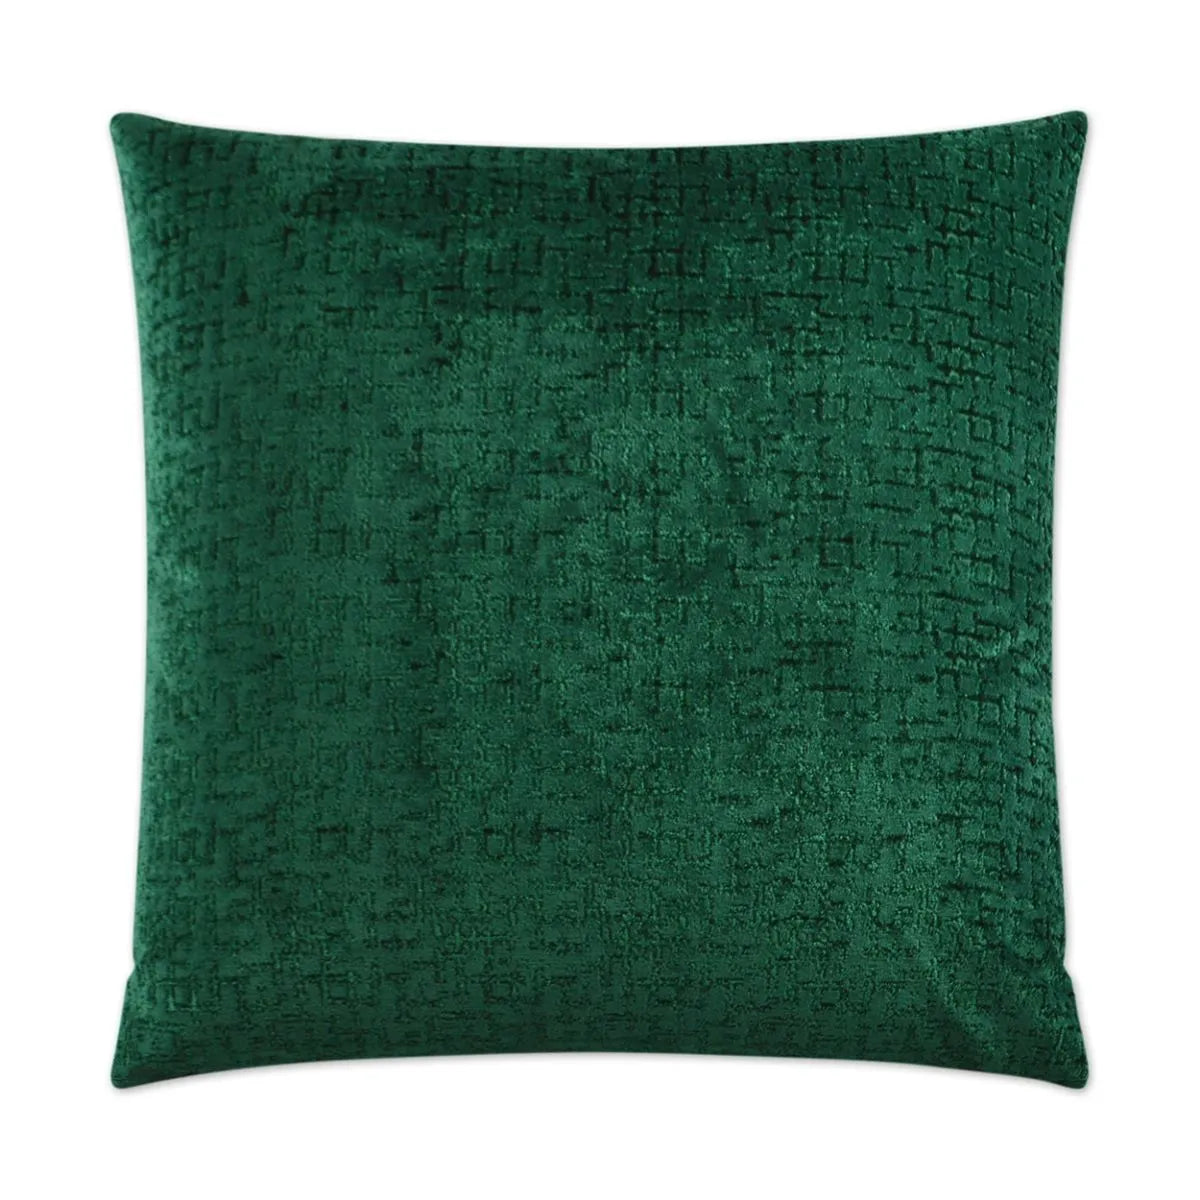 Emerald Ecstasy Pillow